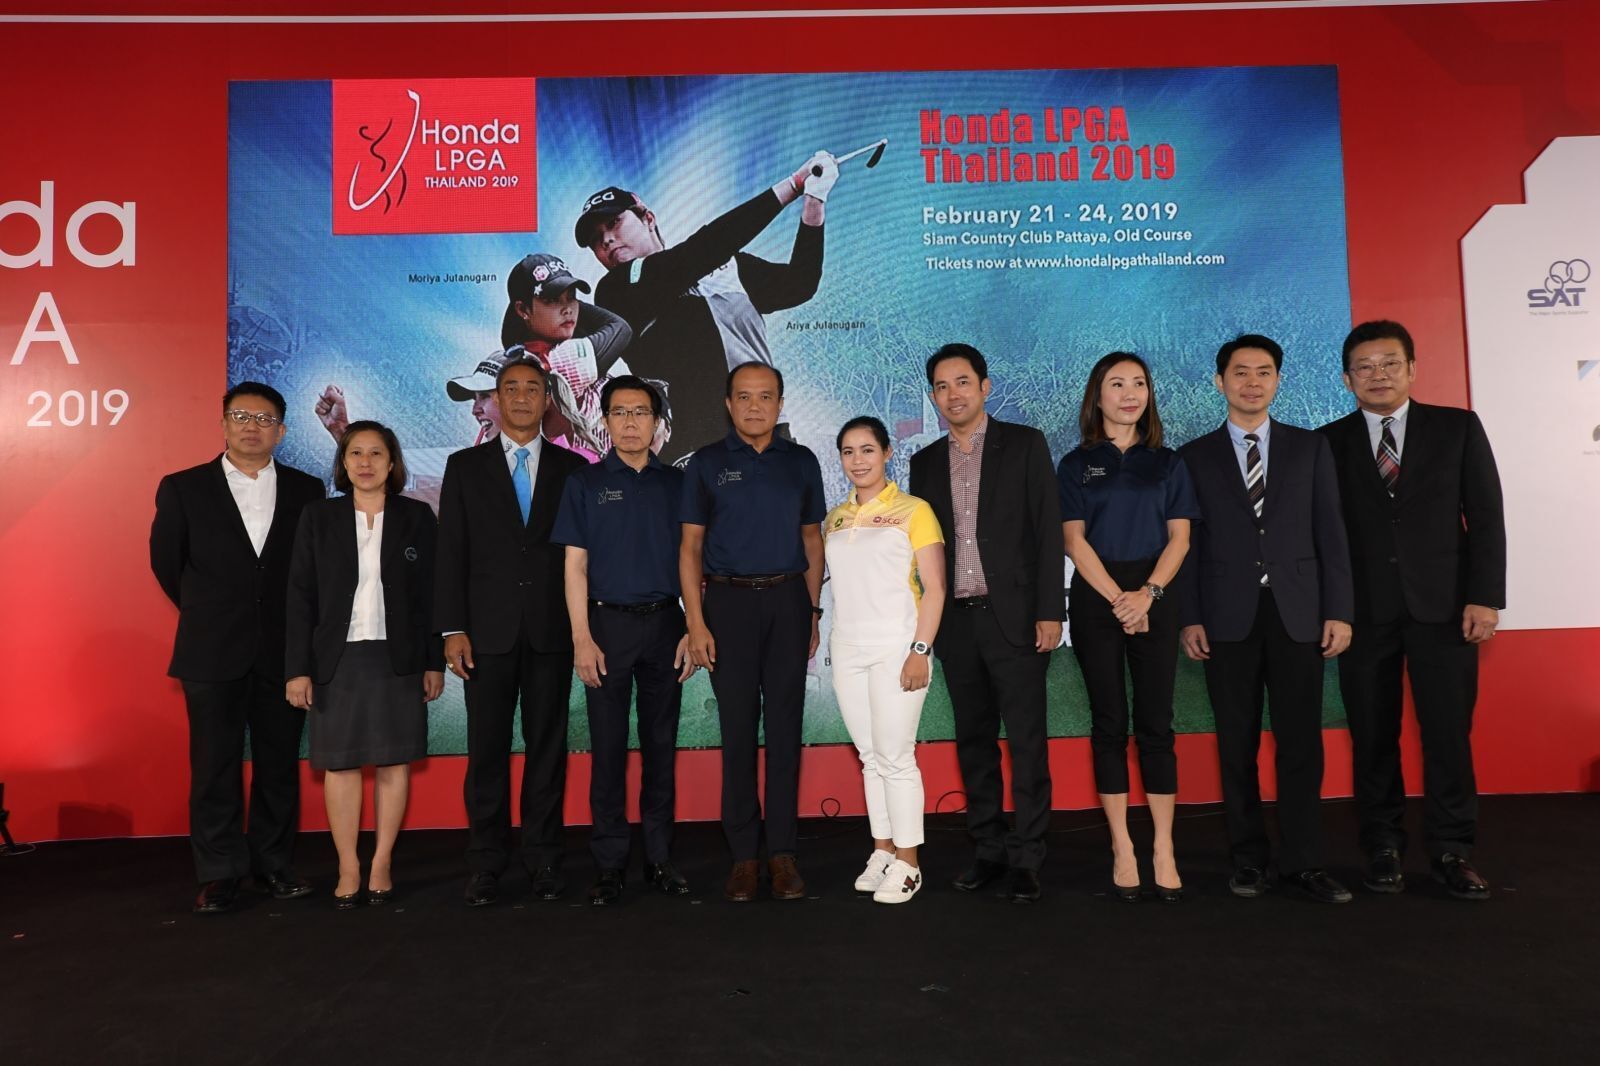 Honda LPGA Thailand 2019 